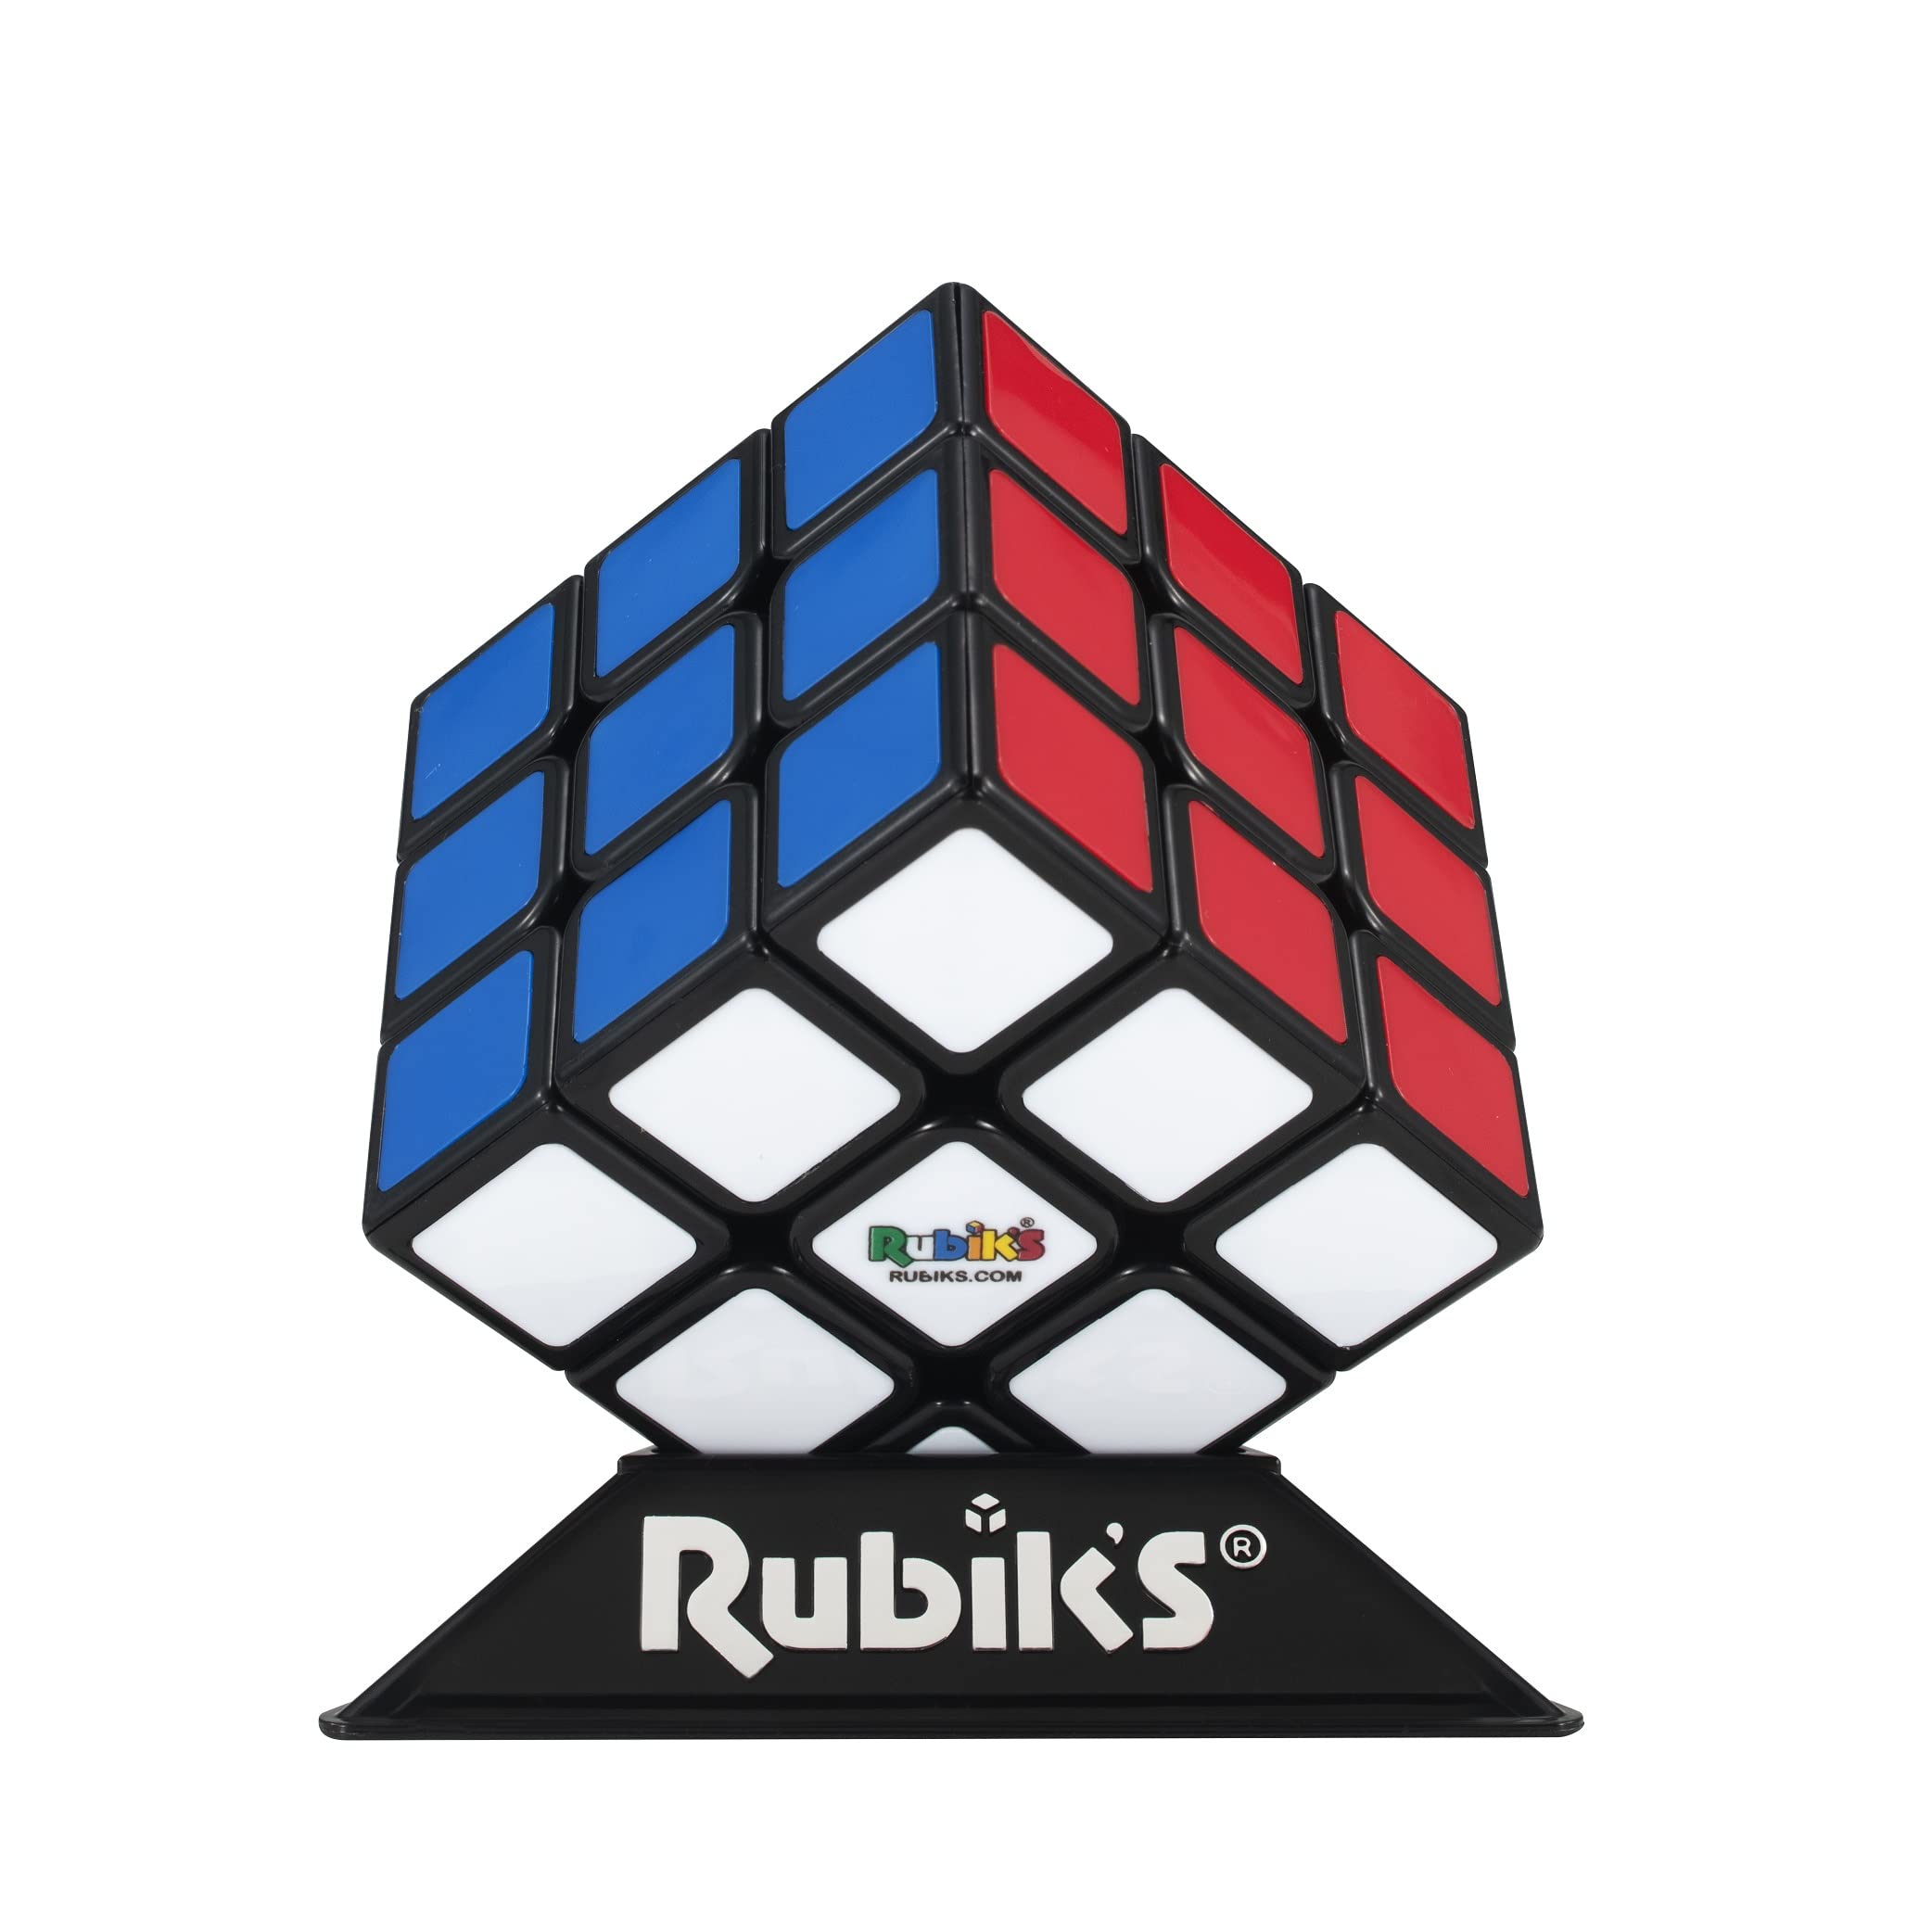 ルービックキューブ 3×3 ver.3.0 6色 4975430516680